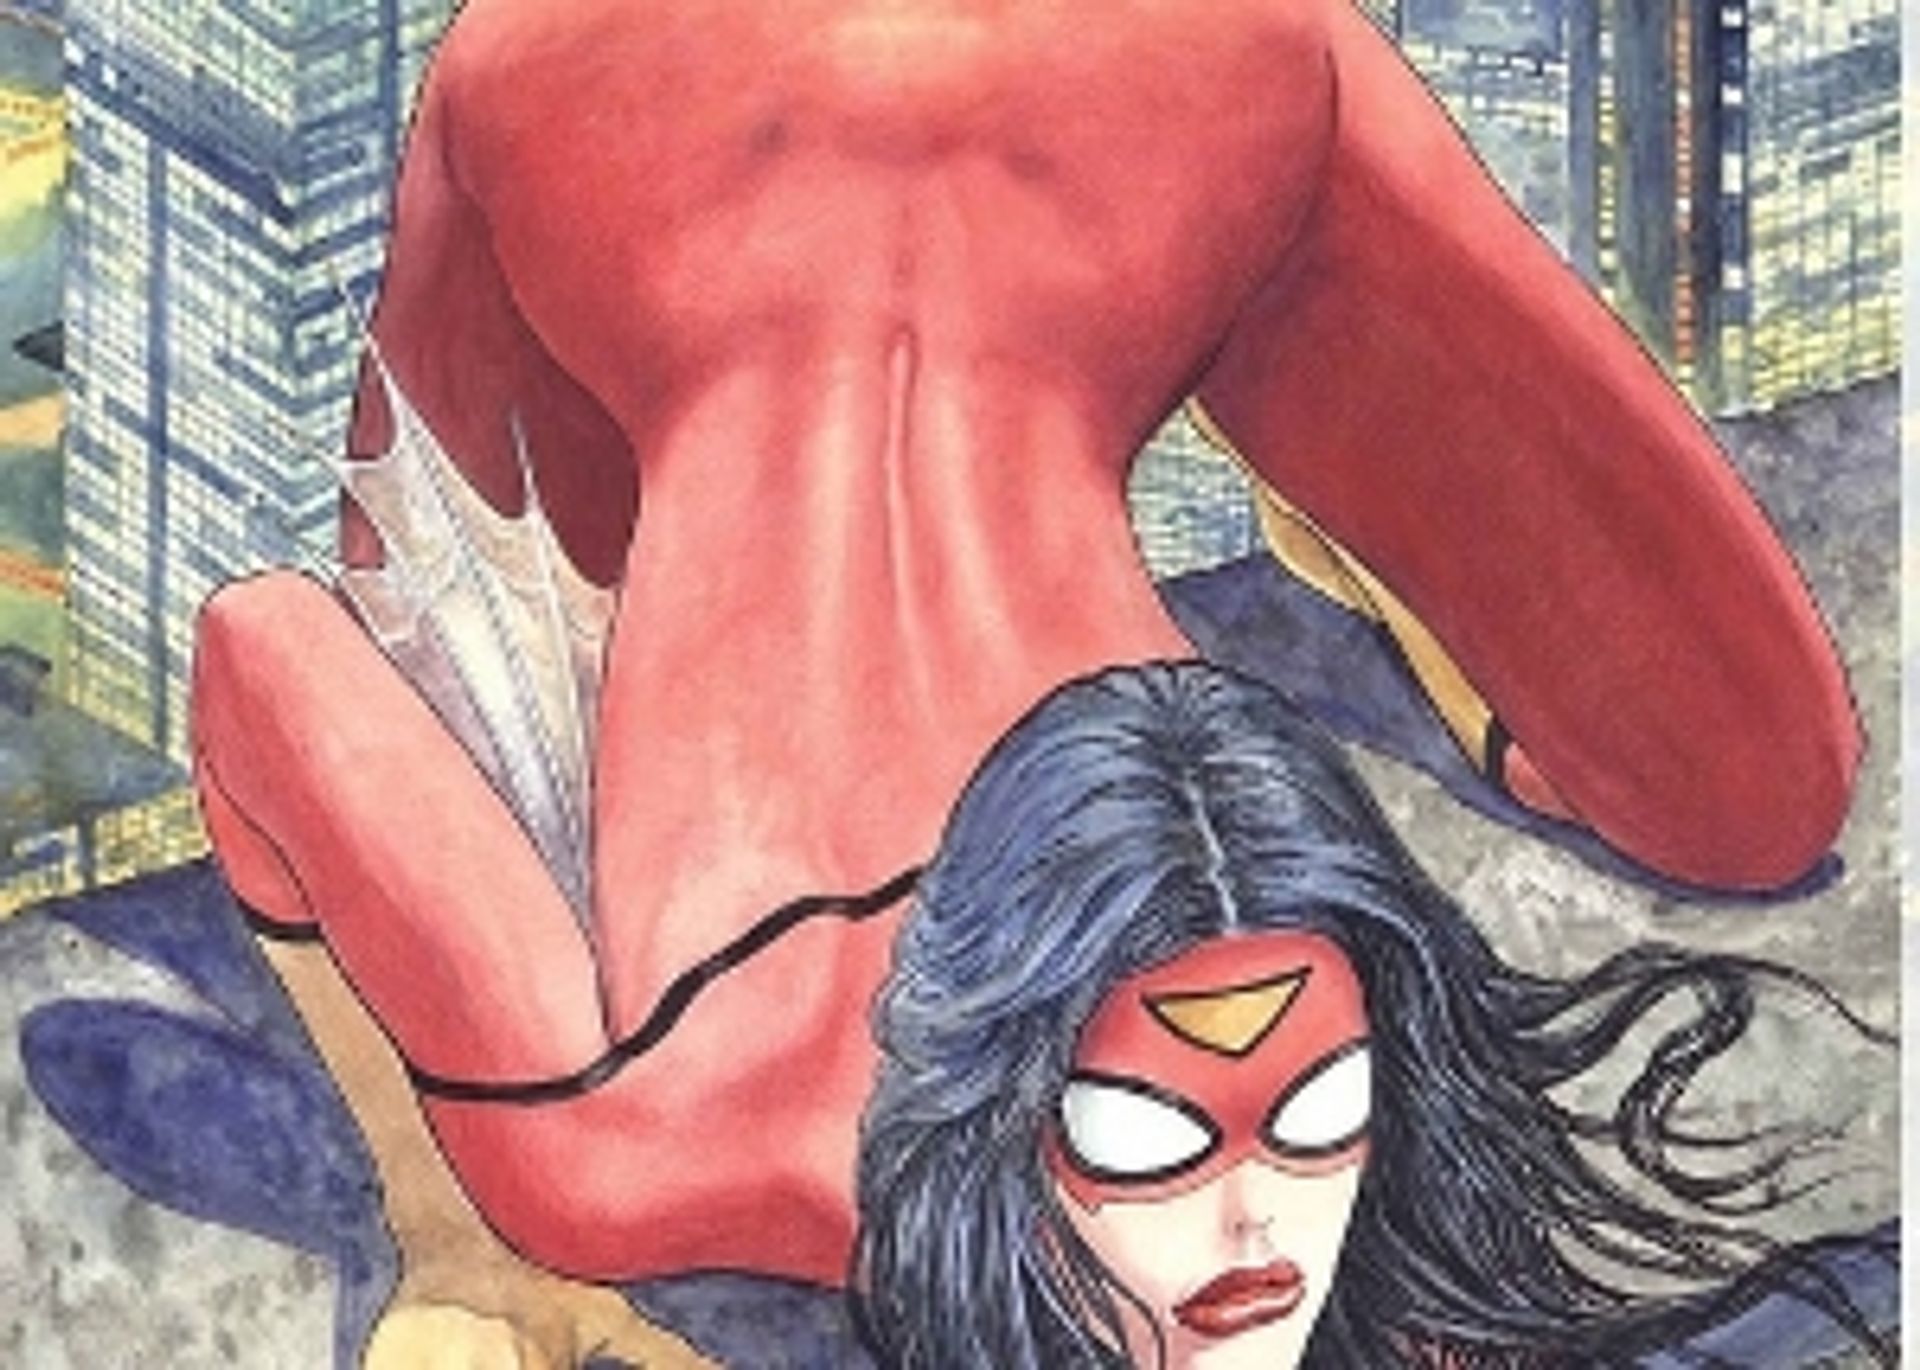 Ophef over de nieuwe Spiderwoman - Joop afbeelding